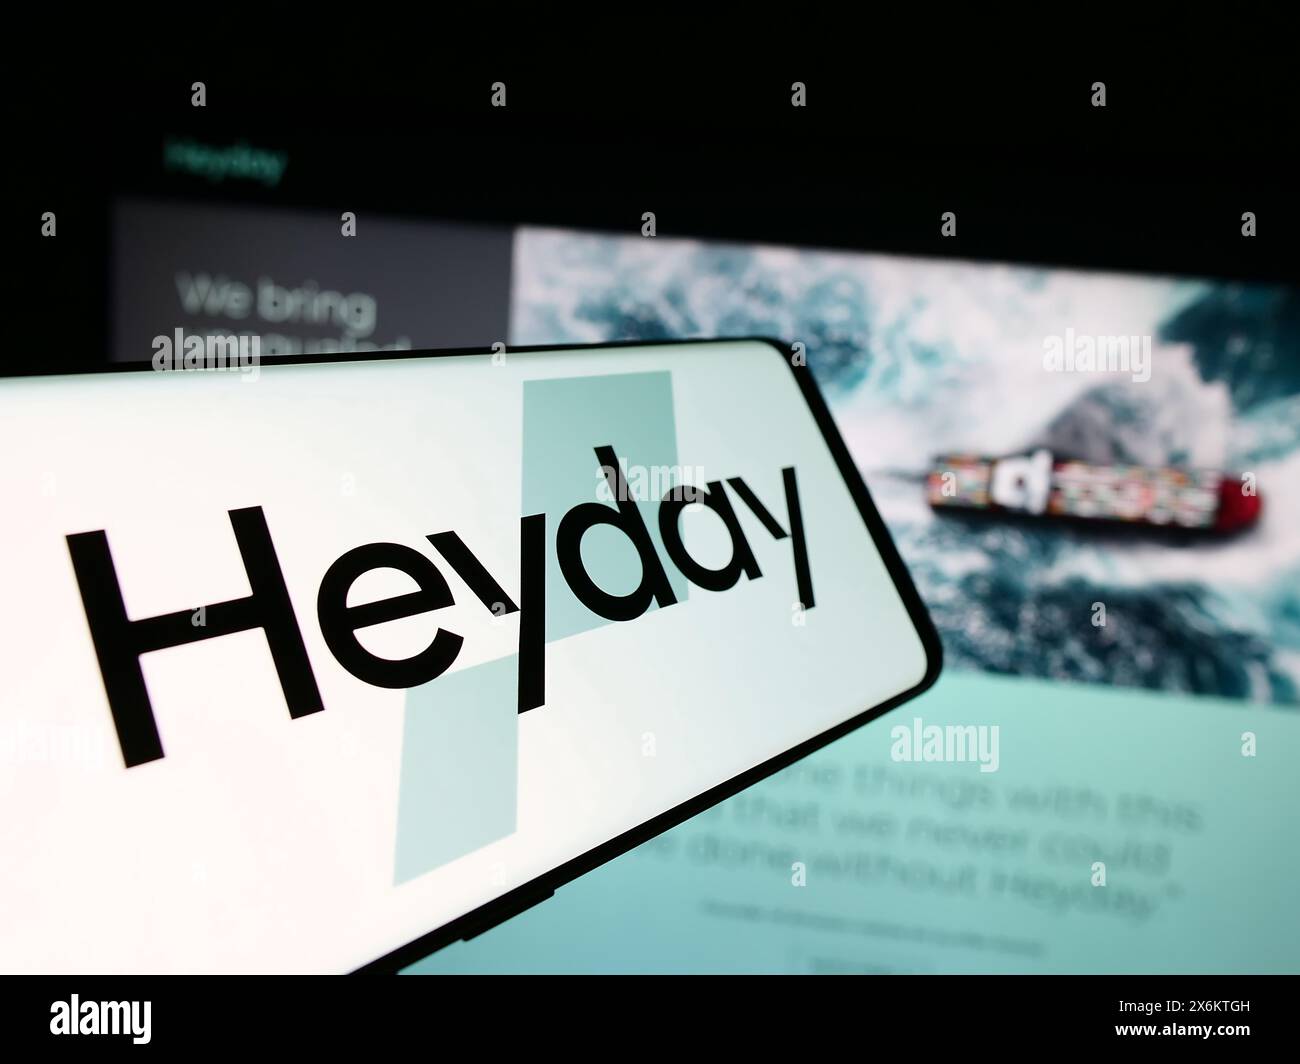 Telefono cellulare con logo della piattaforma americana di incubatori di e-commerce Heyday davanti al sito web aziendale. Messa a fuoco al centro del display del telefono. Foto Stock